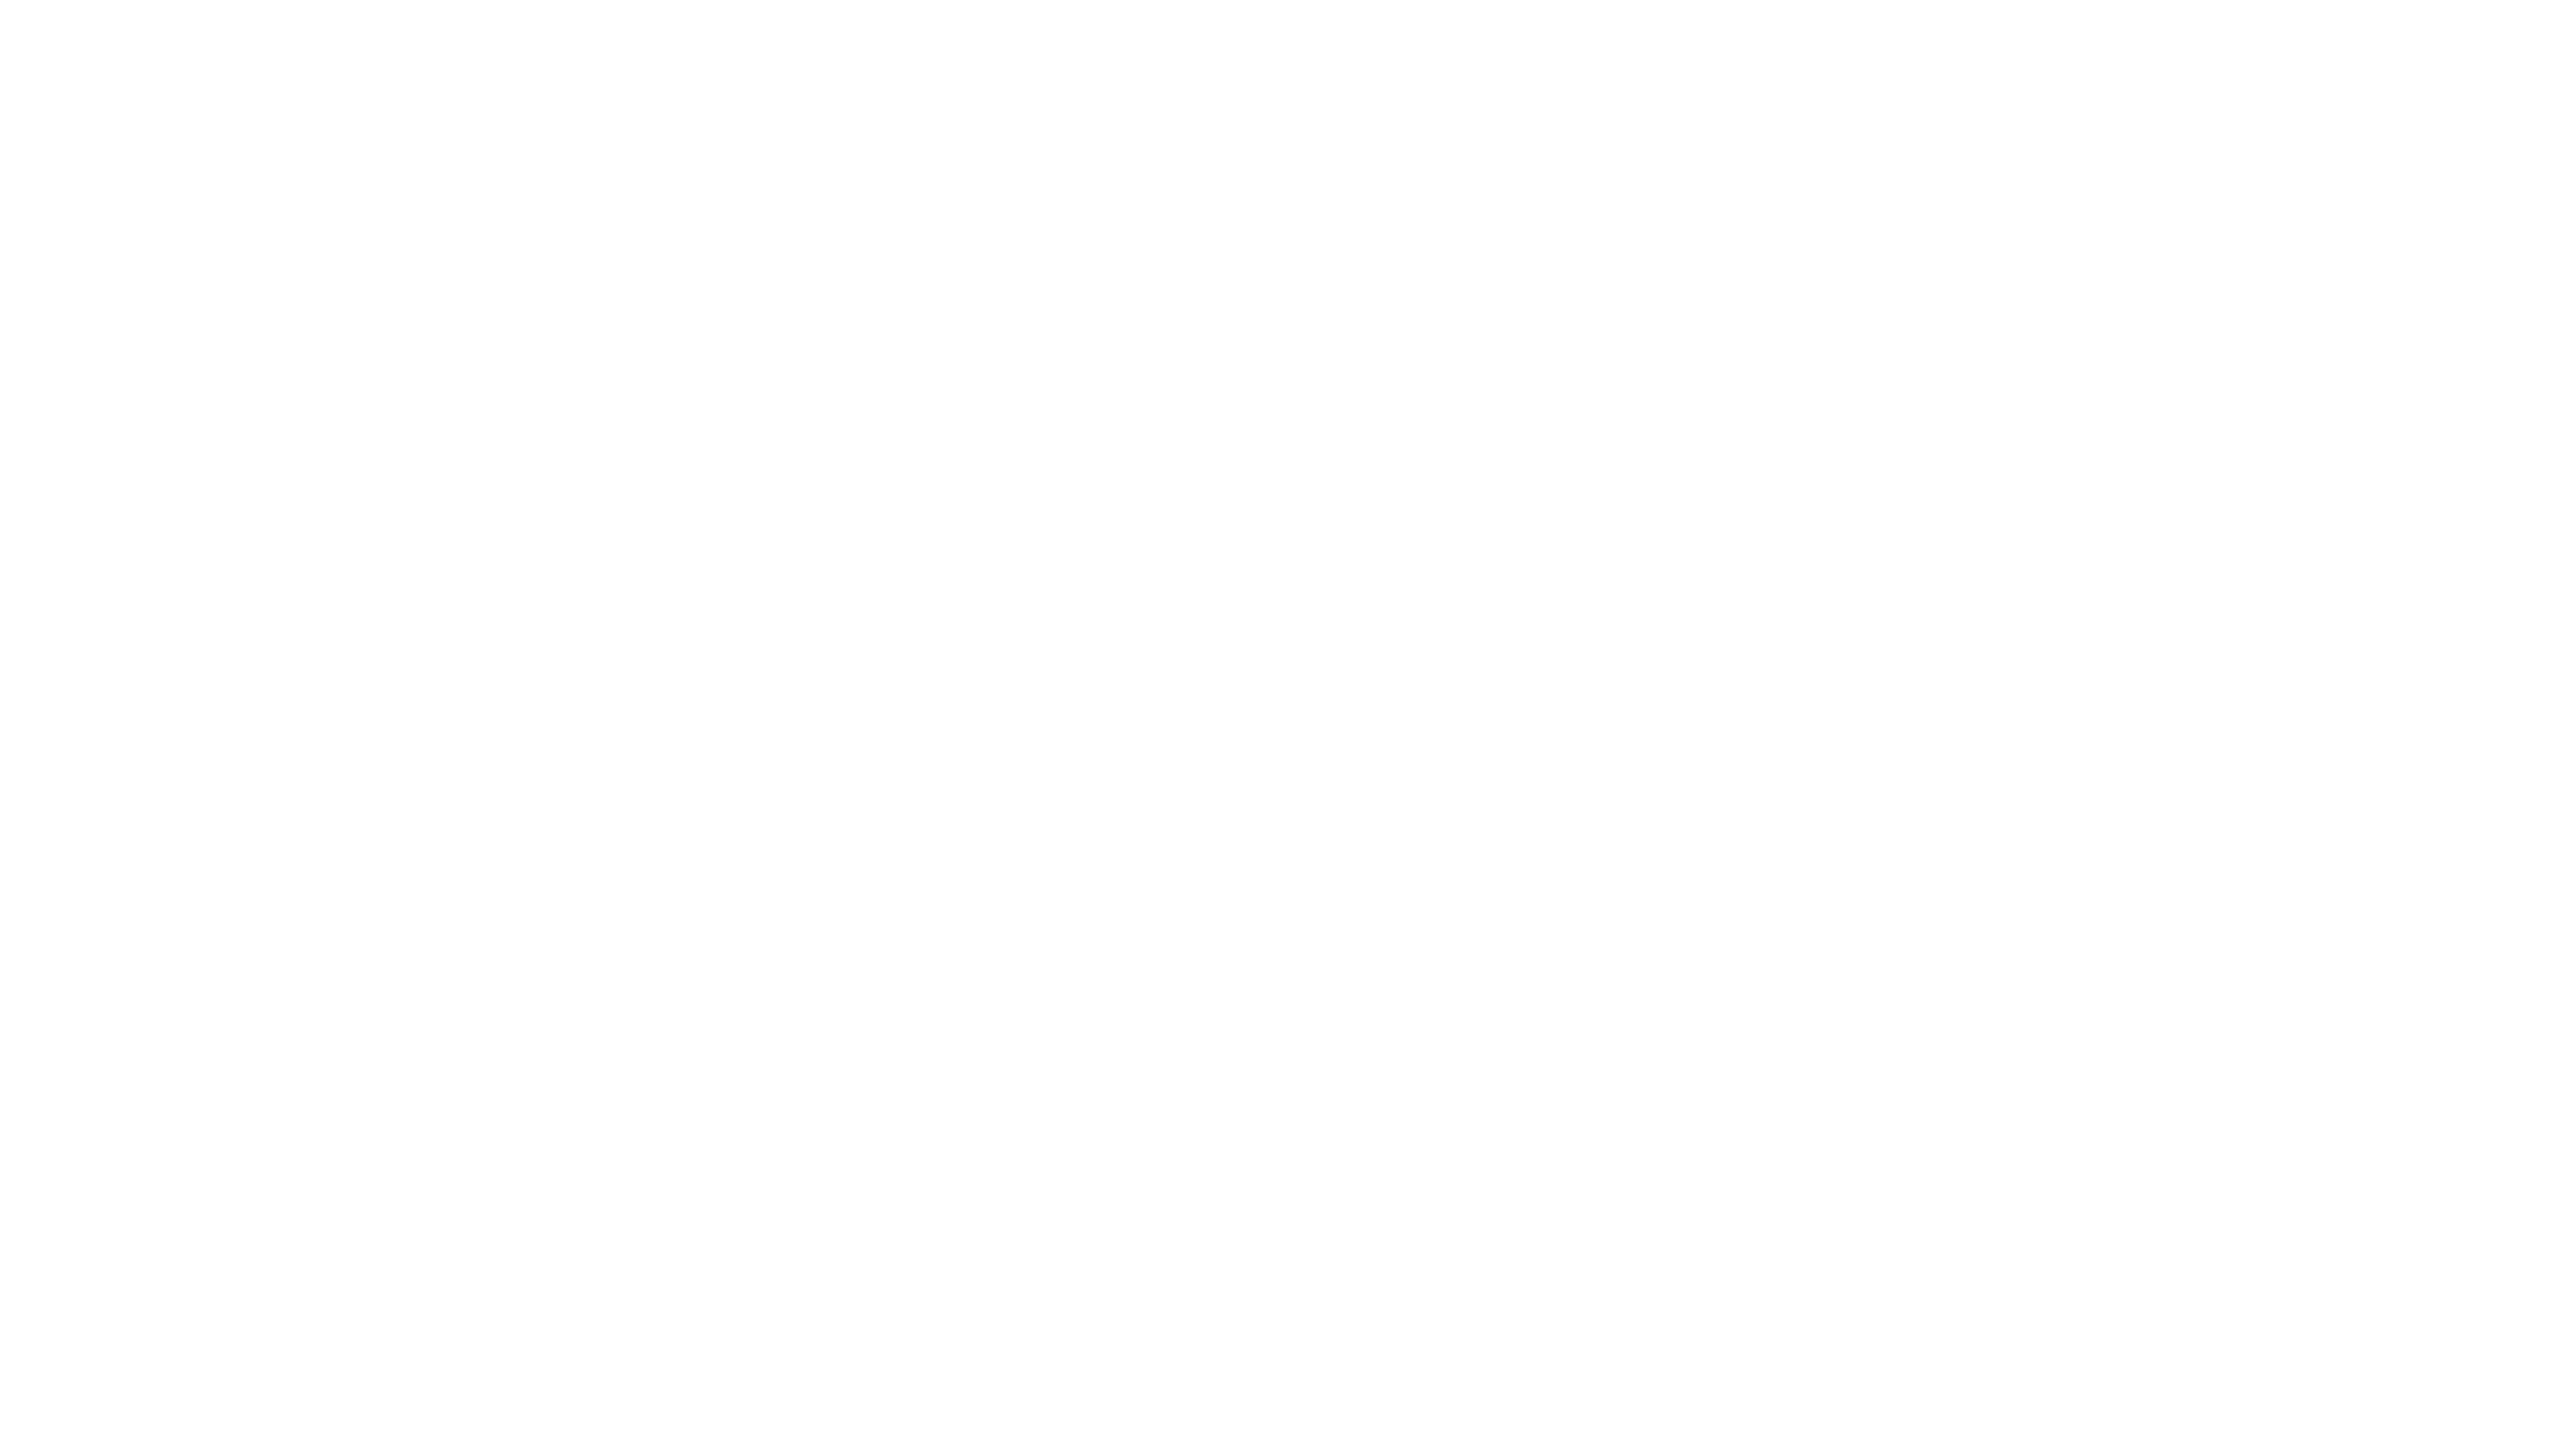 fs2 logo